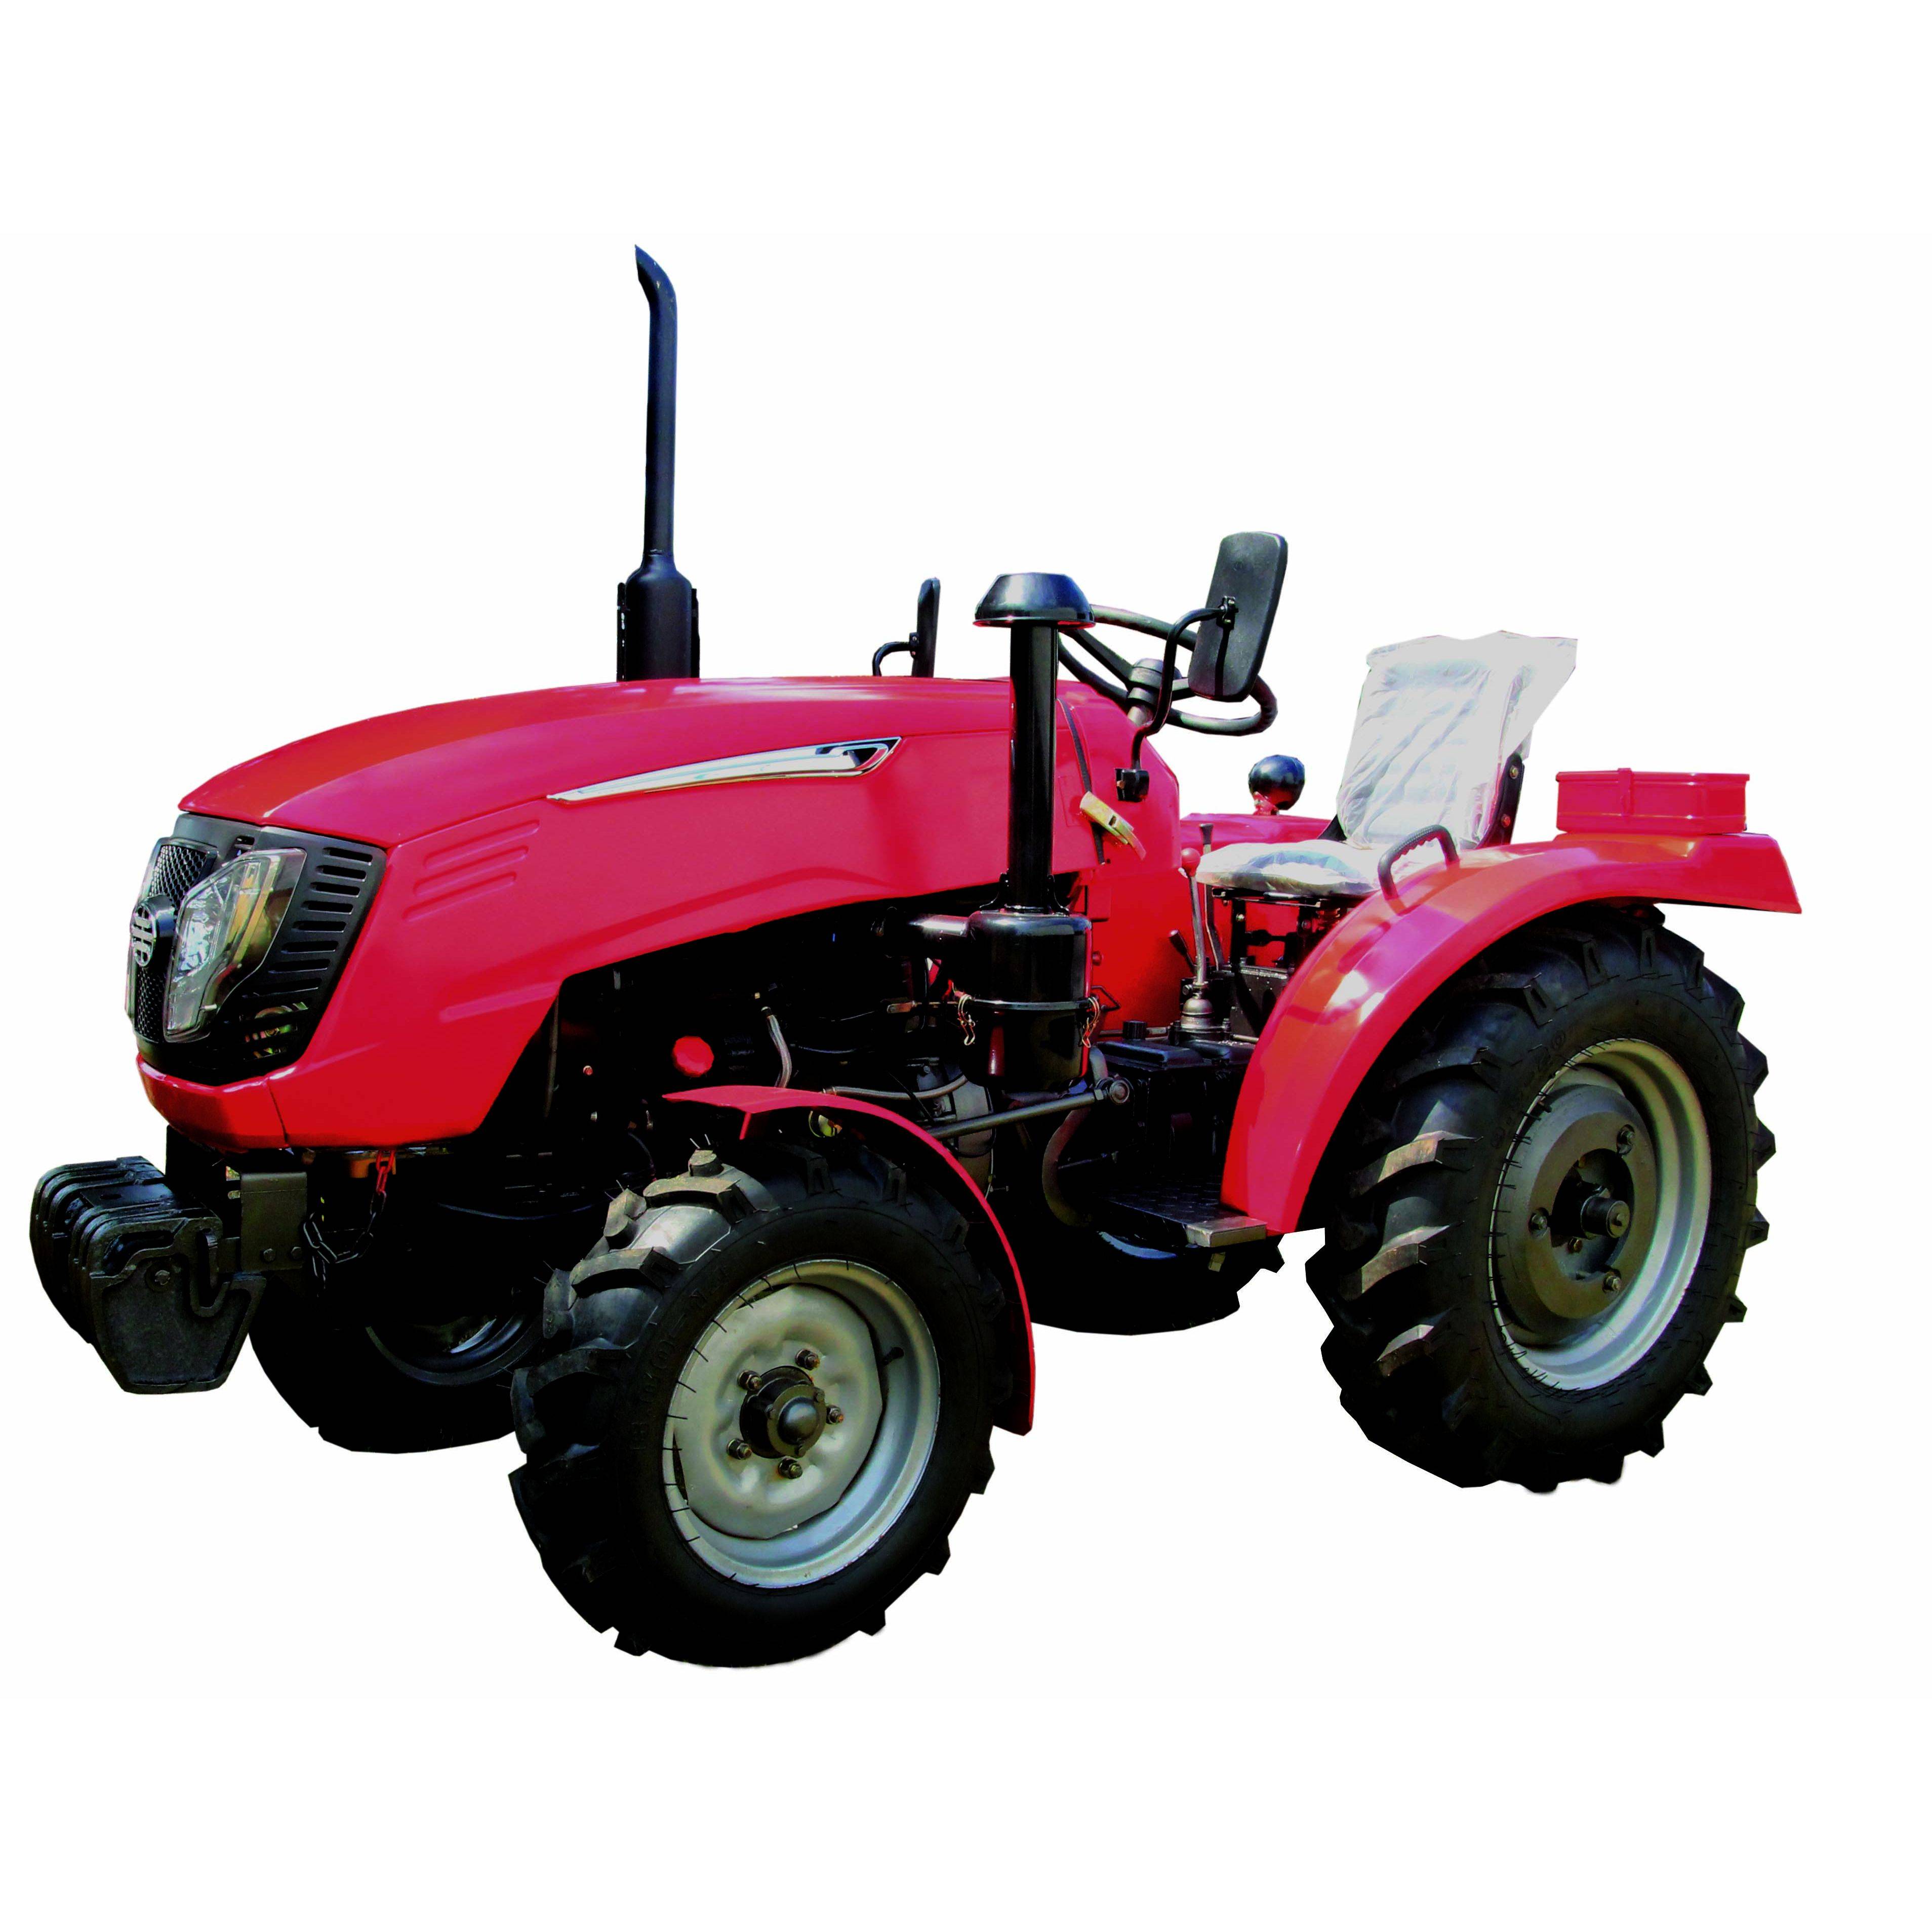 ✅ все модели и цены мини тракторов: htz т-010, ум-400, хт-220, df-244, avant 200, сватт хт-220 - tym-tractor.ru